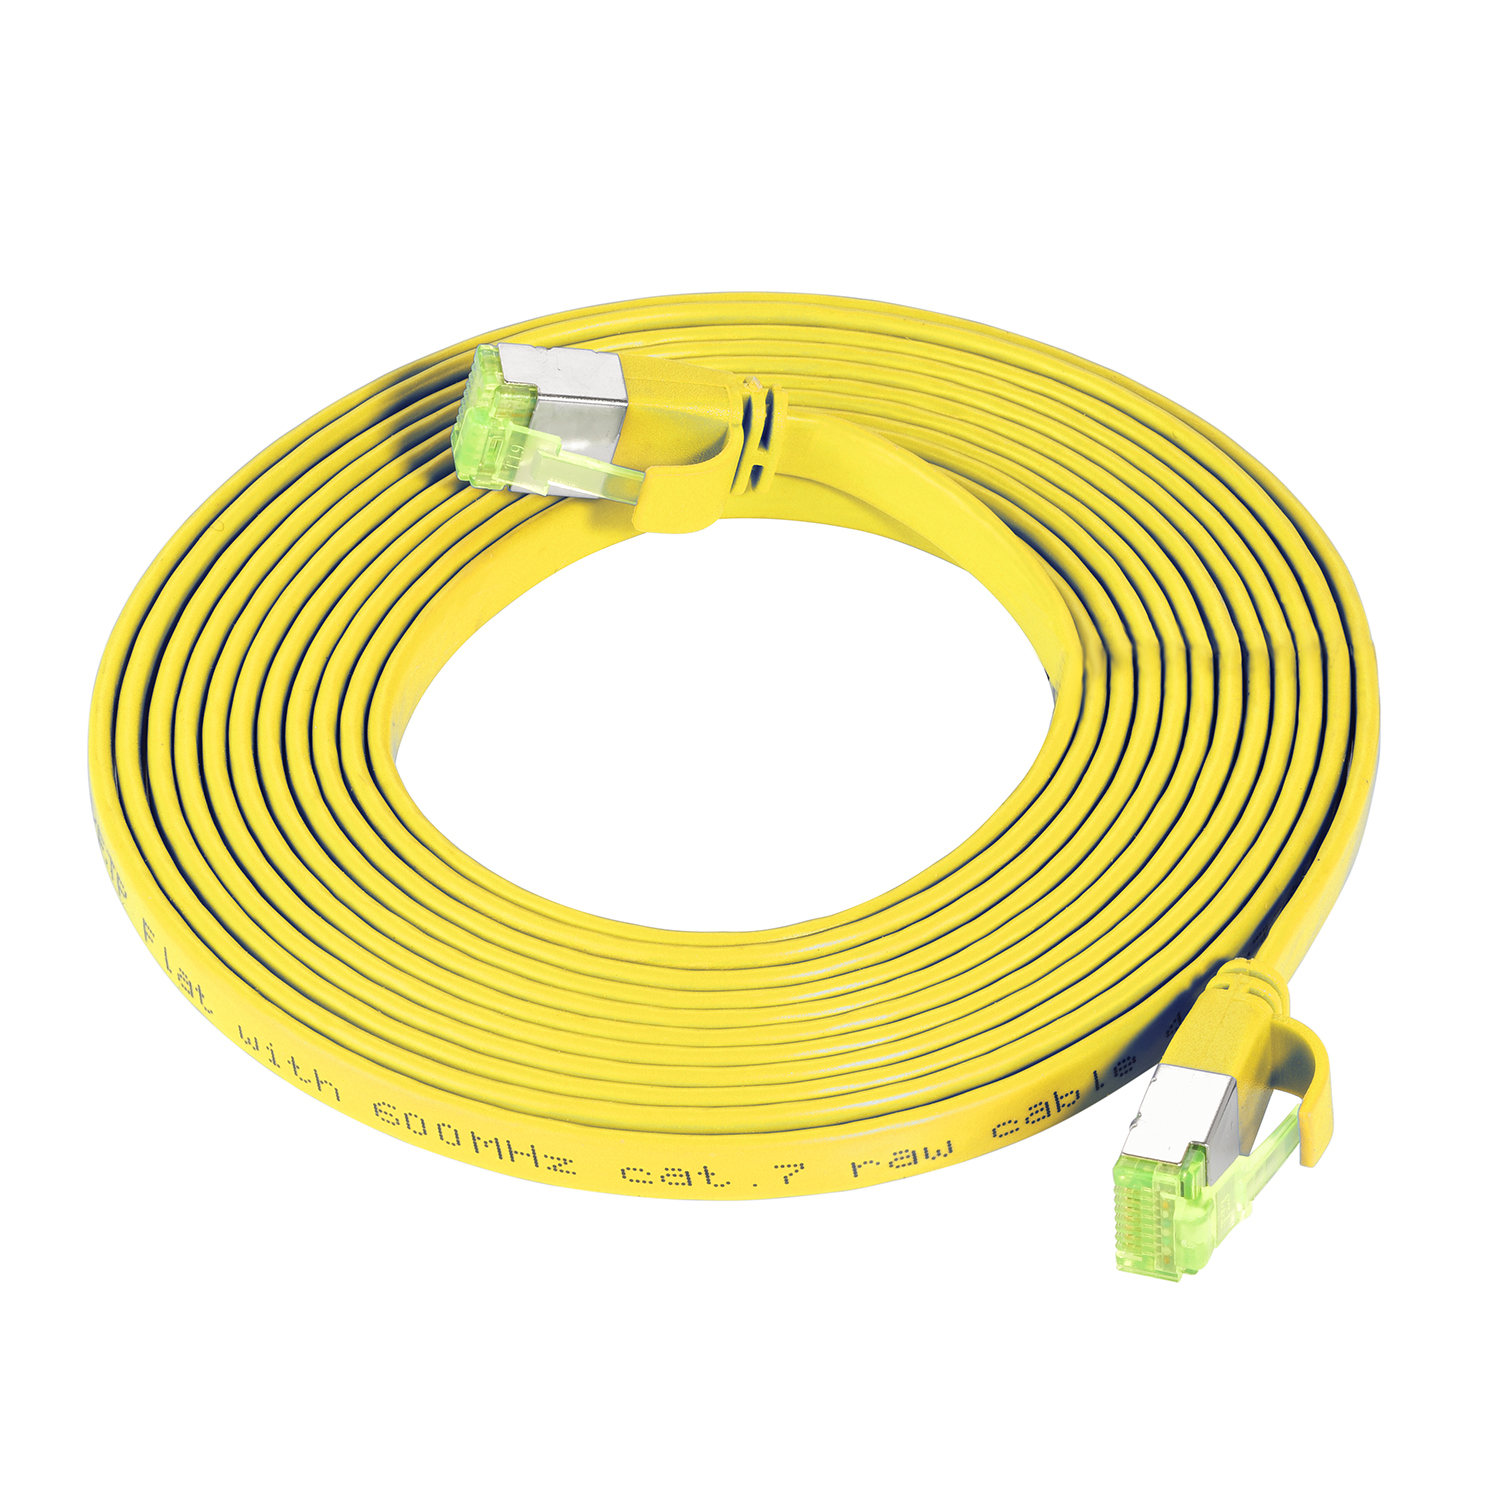 Netzwerkkabel, TPFNET GBit, 10 7,5m Patchkabel / gelb, Flachkabel 7,5 m U/FTP